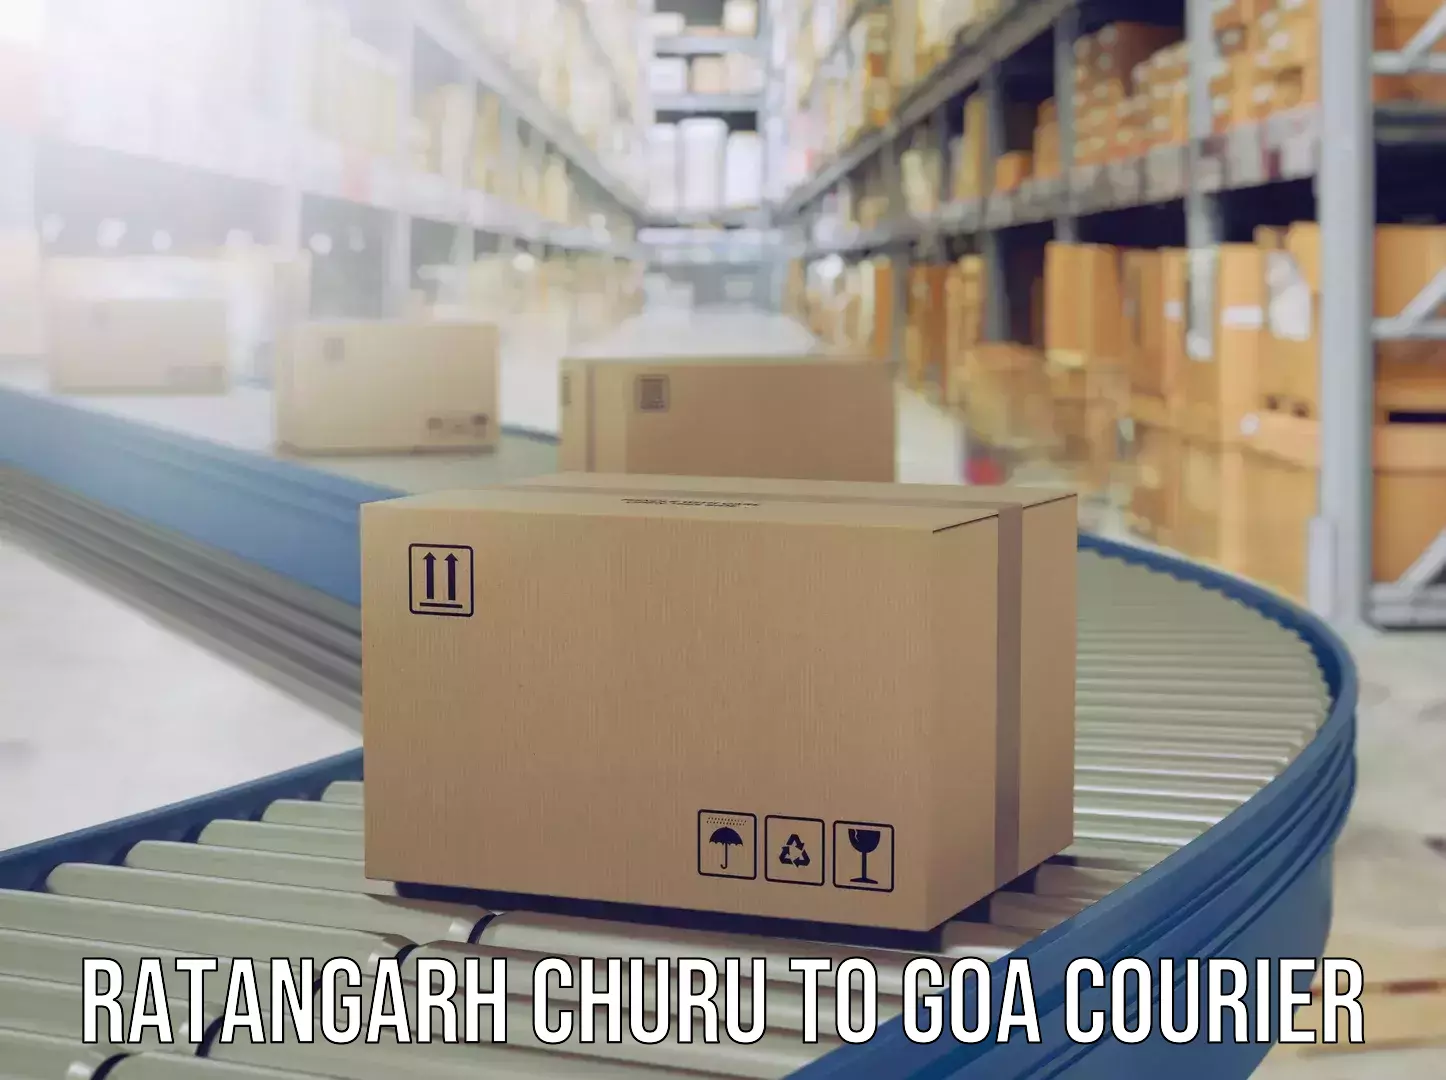 Door-to-door baggage service Ratangarh Churu to NIT Goa